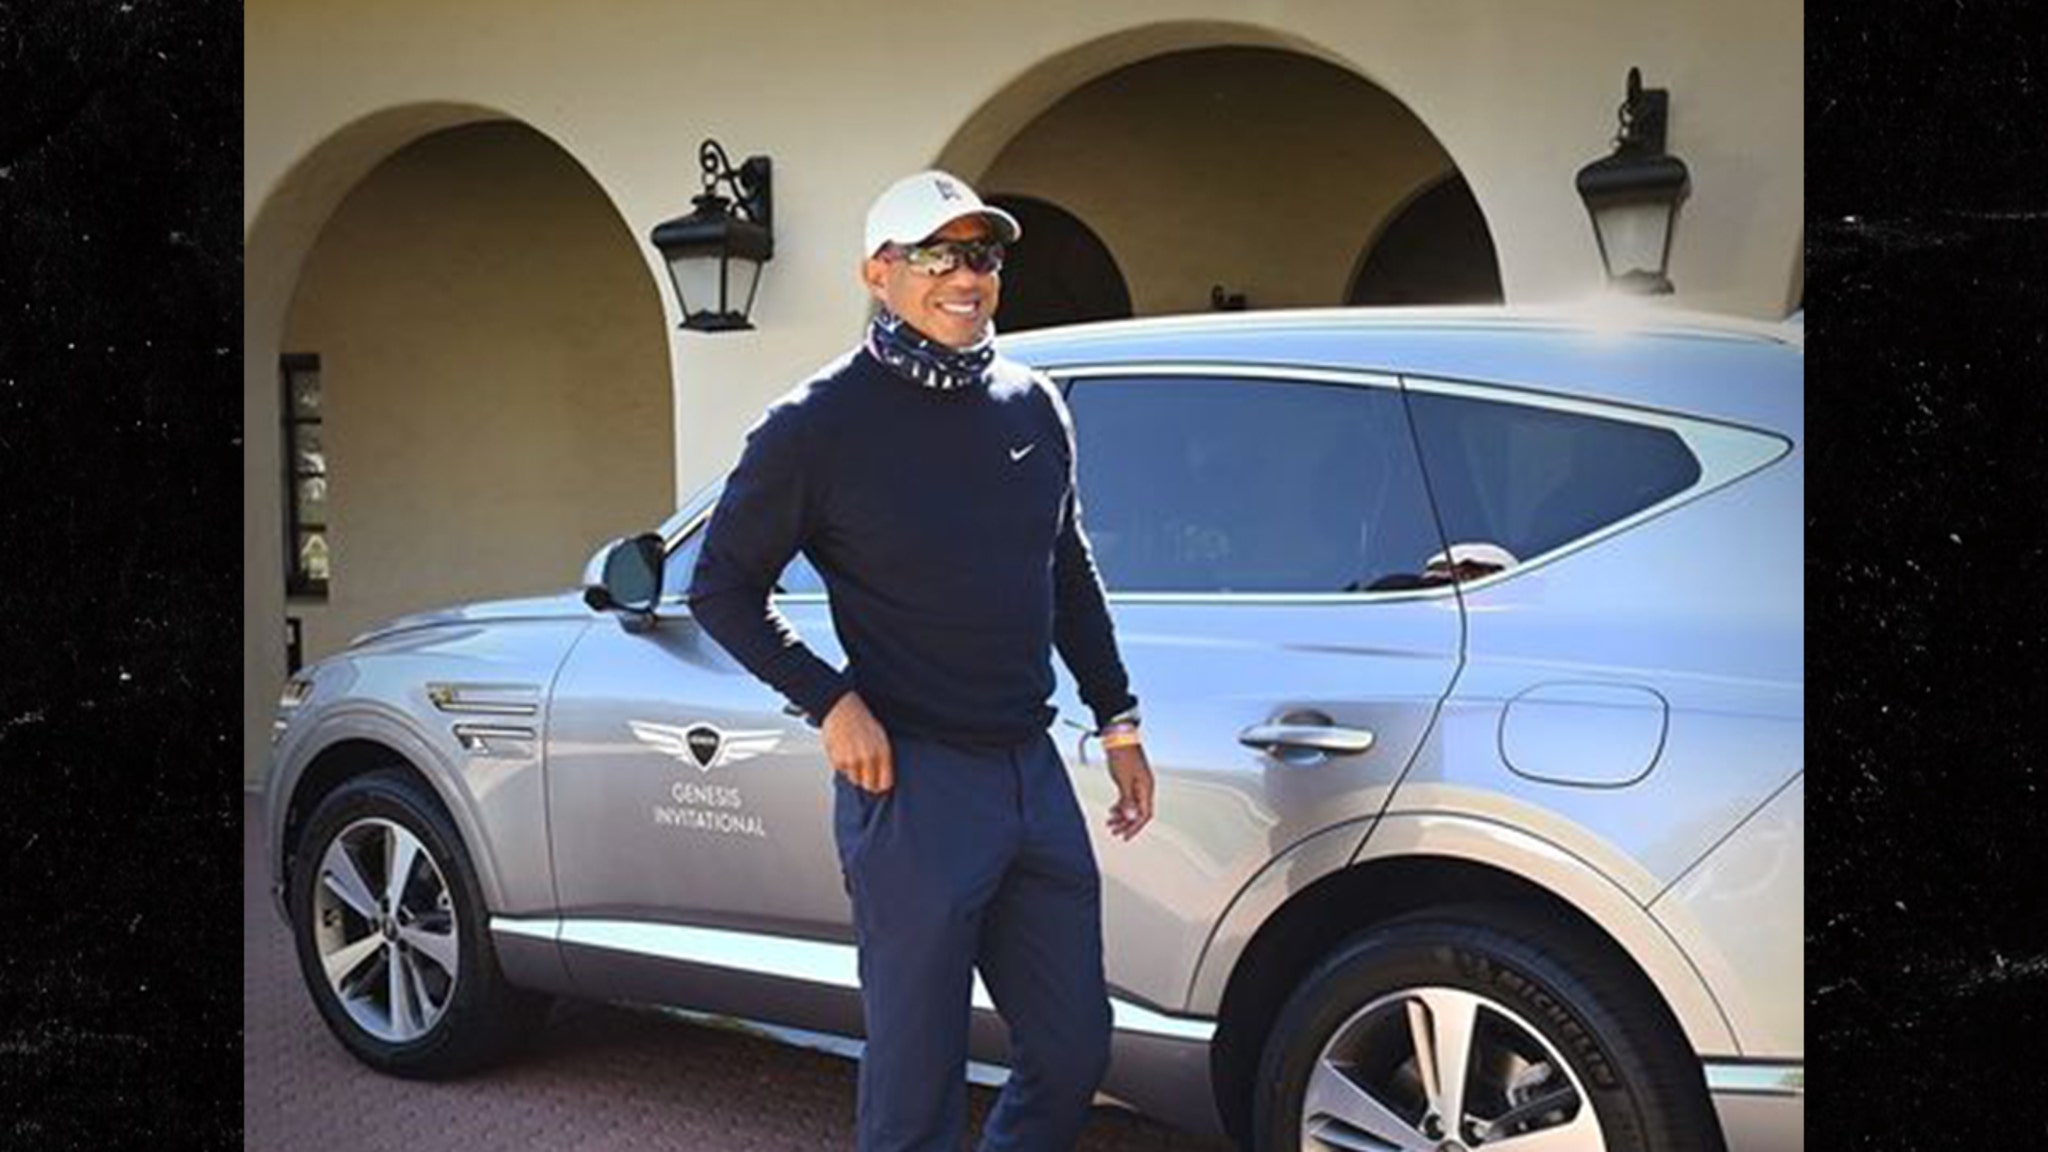 Tiger Woods un SUV distrutto ricco di funzioni di sicurezza salvavita